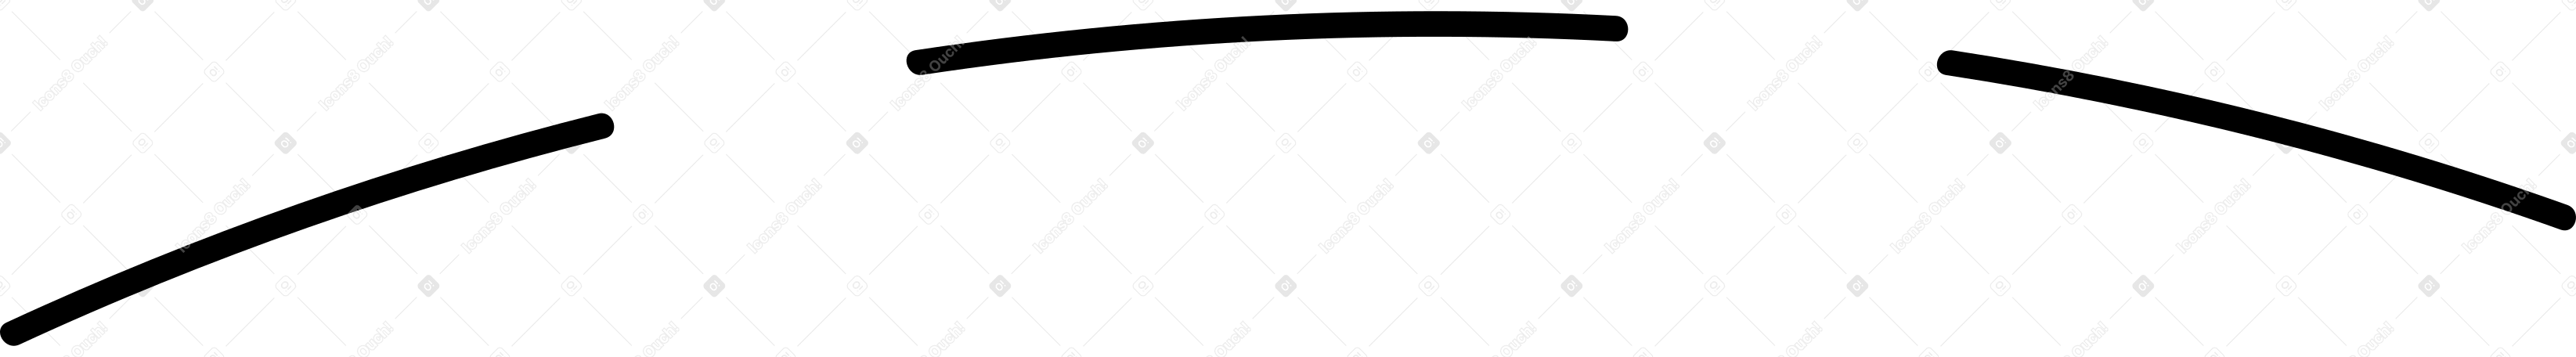 black dotted line background Illustration in PNG, SVG